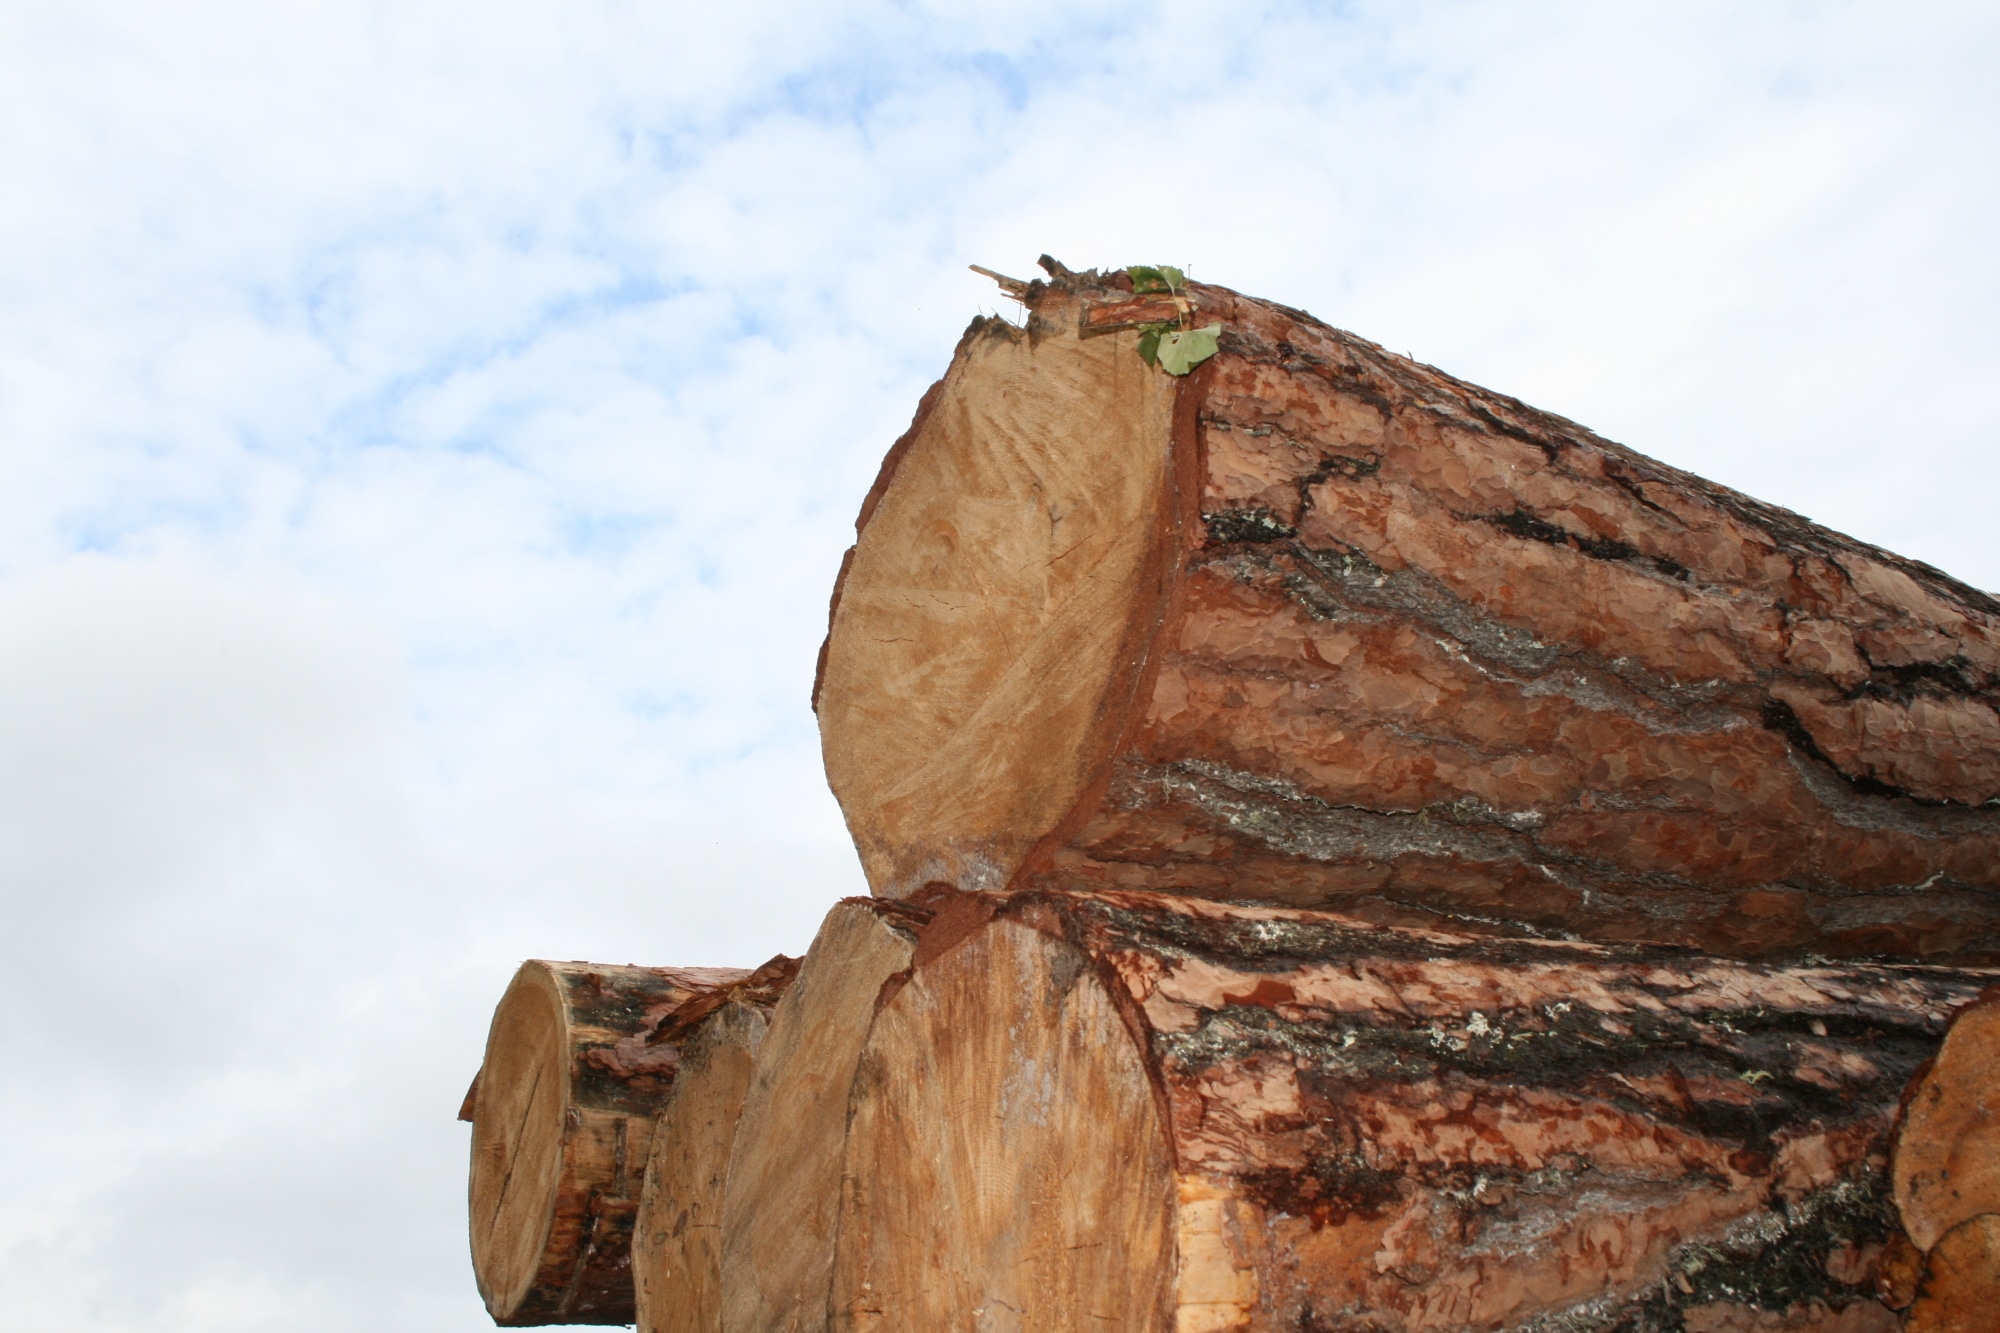 Криминал, Судебные дела, Томские новости, бюджет заниженная стоимость лес вывозят лес рубят лес экспорт древесины Томский предприниматель «сэкономил» 10 млн рублей, продавай в Китай лес по заниженной стоимости